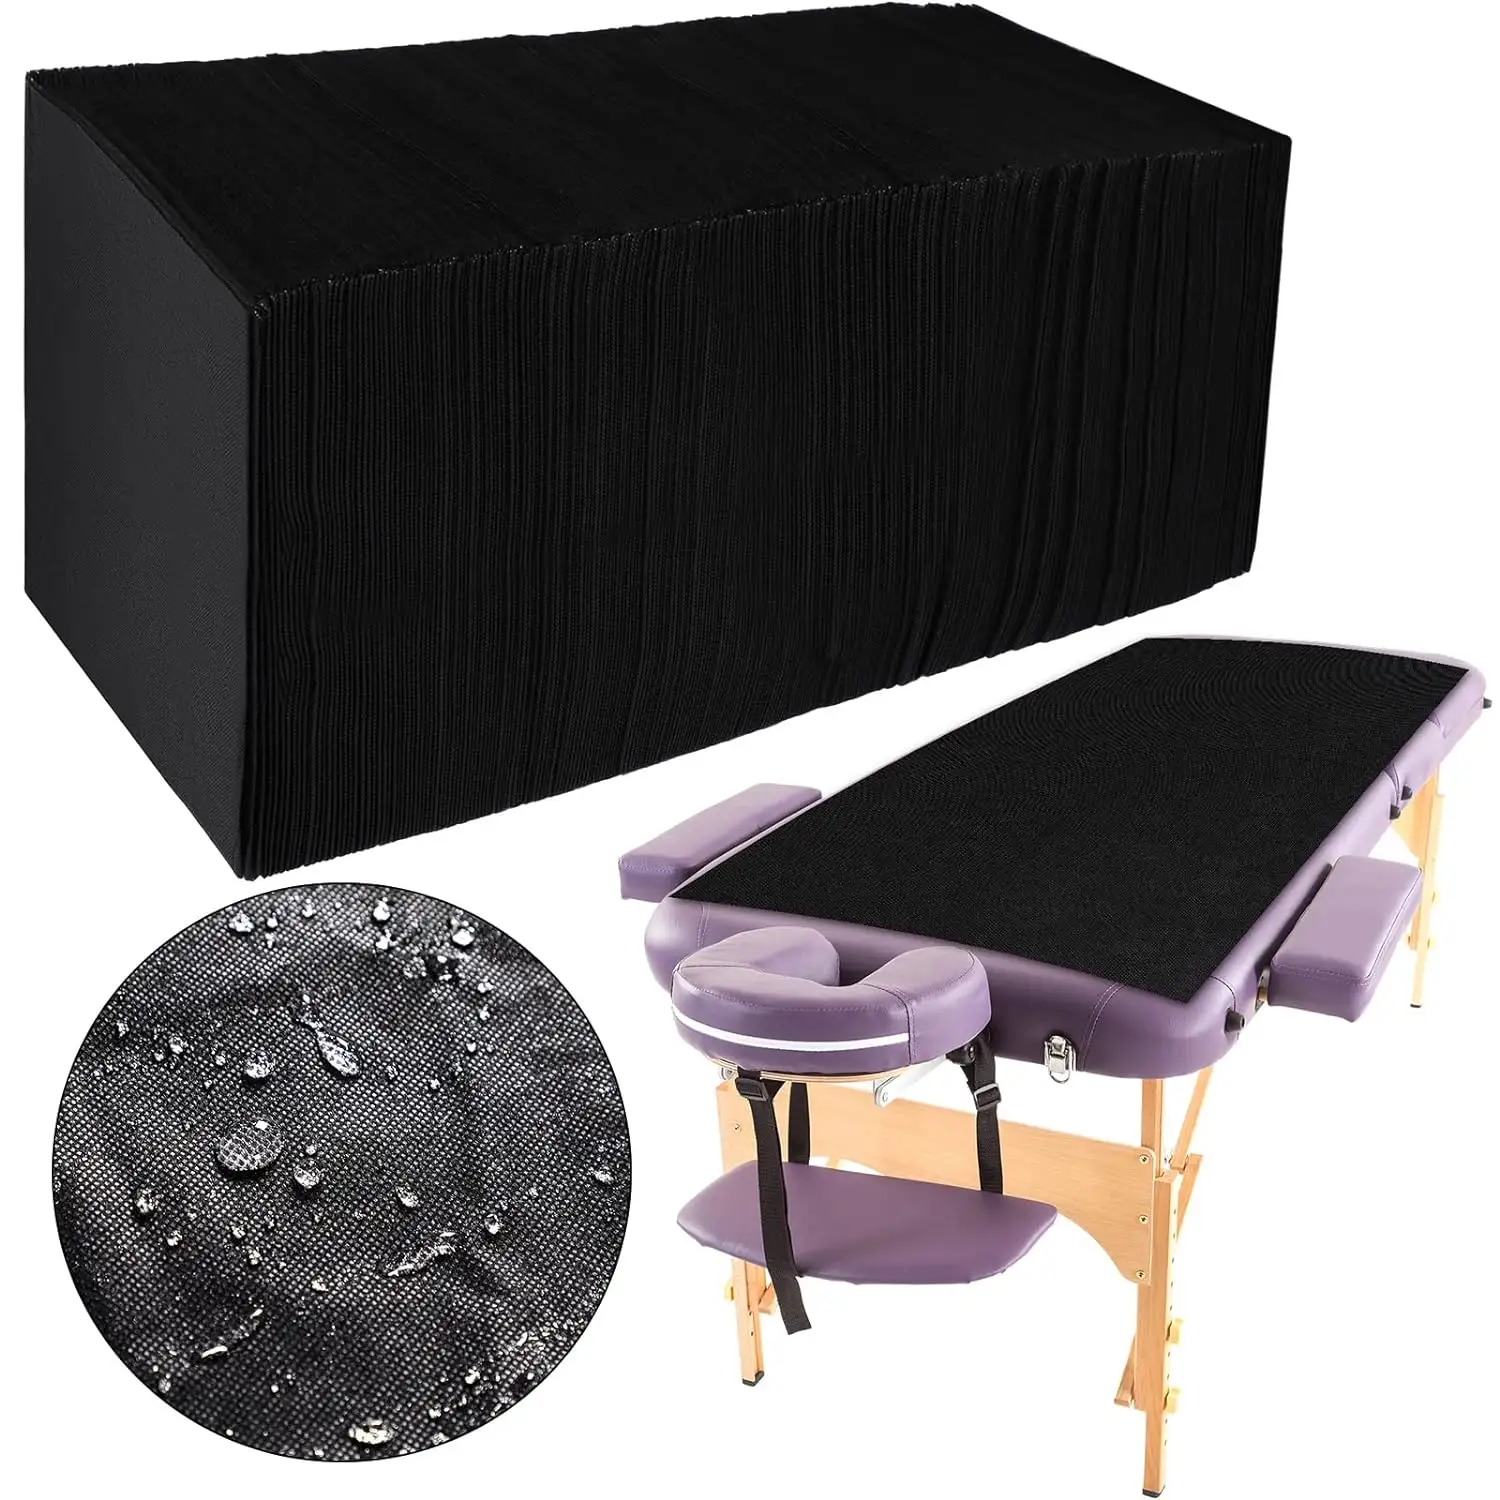 Draps de lit jetables draps de spa non tissés noir imperméable à l'huile couvre-lit draps de table de massage pour spa tatouage salon d'hôtel